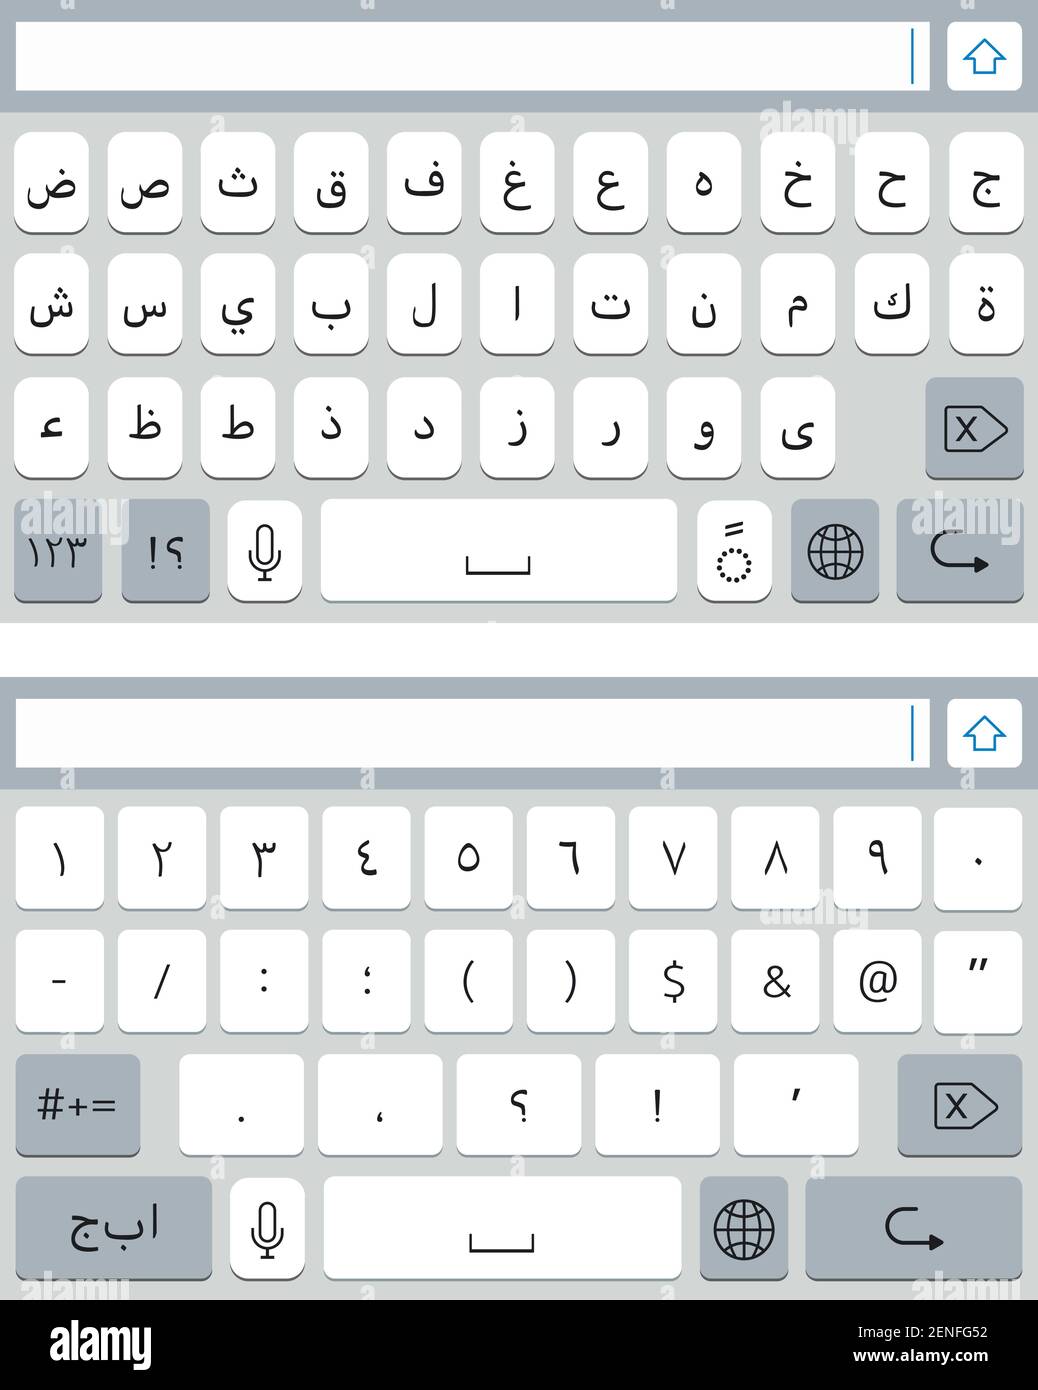 Clavier virtuel arabe pour smartphone. Maquette du clavier du téléphone  portable, touches alphabétiques et chiffres Image Vectorielle Stock - Alamy